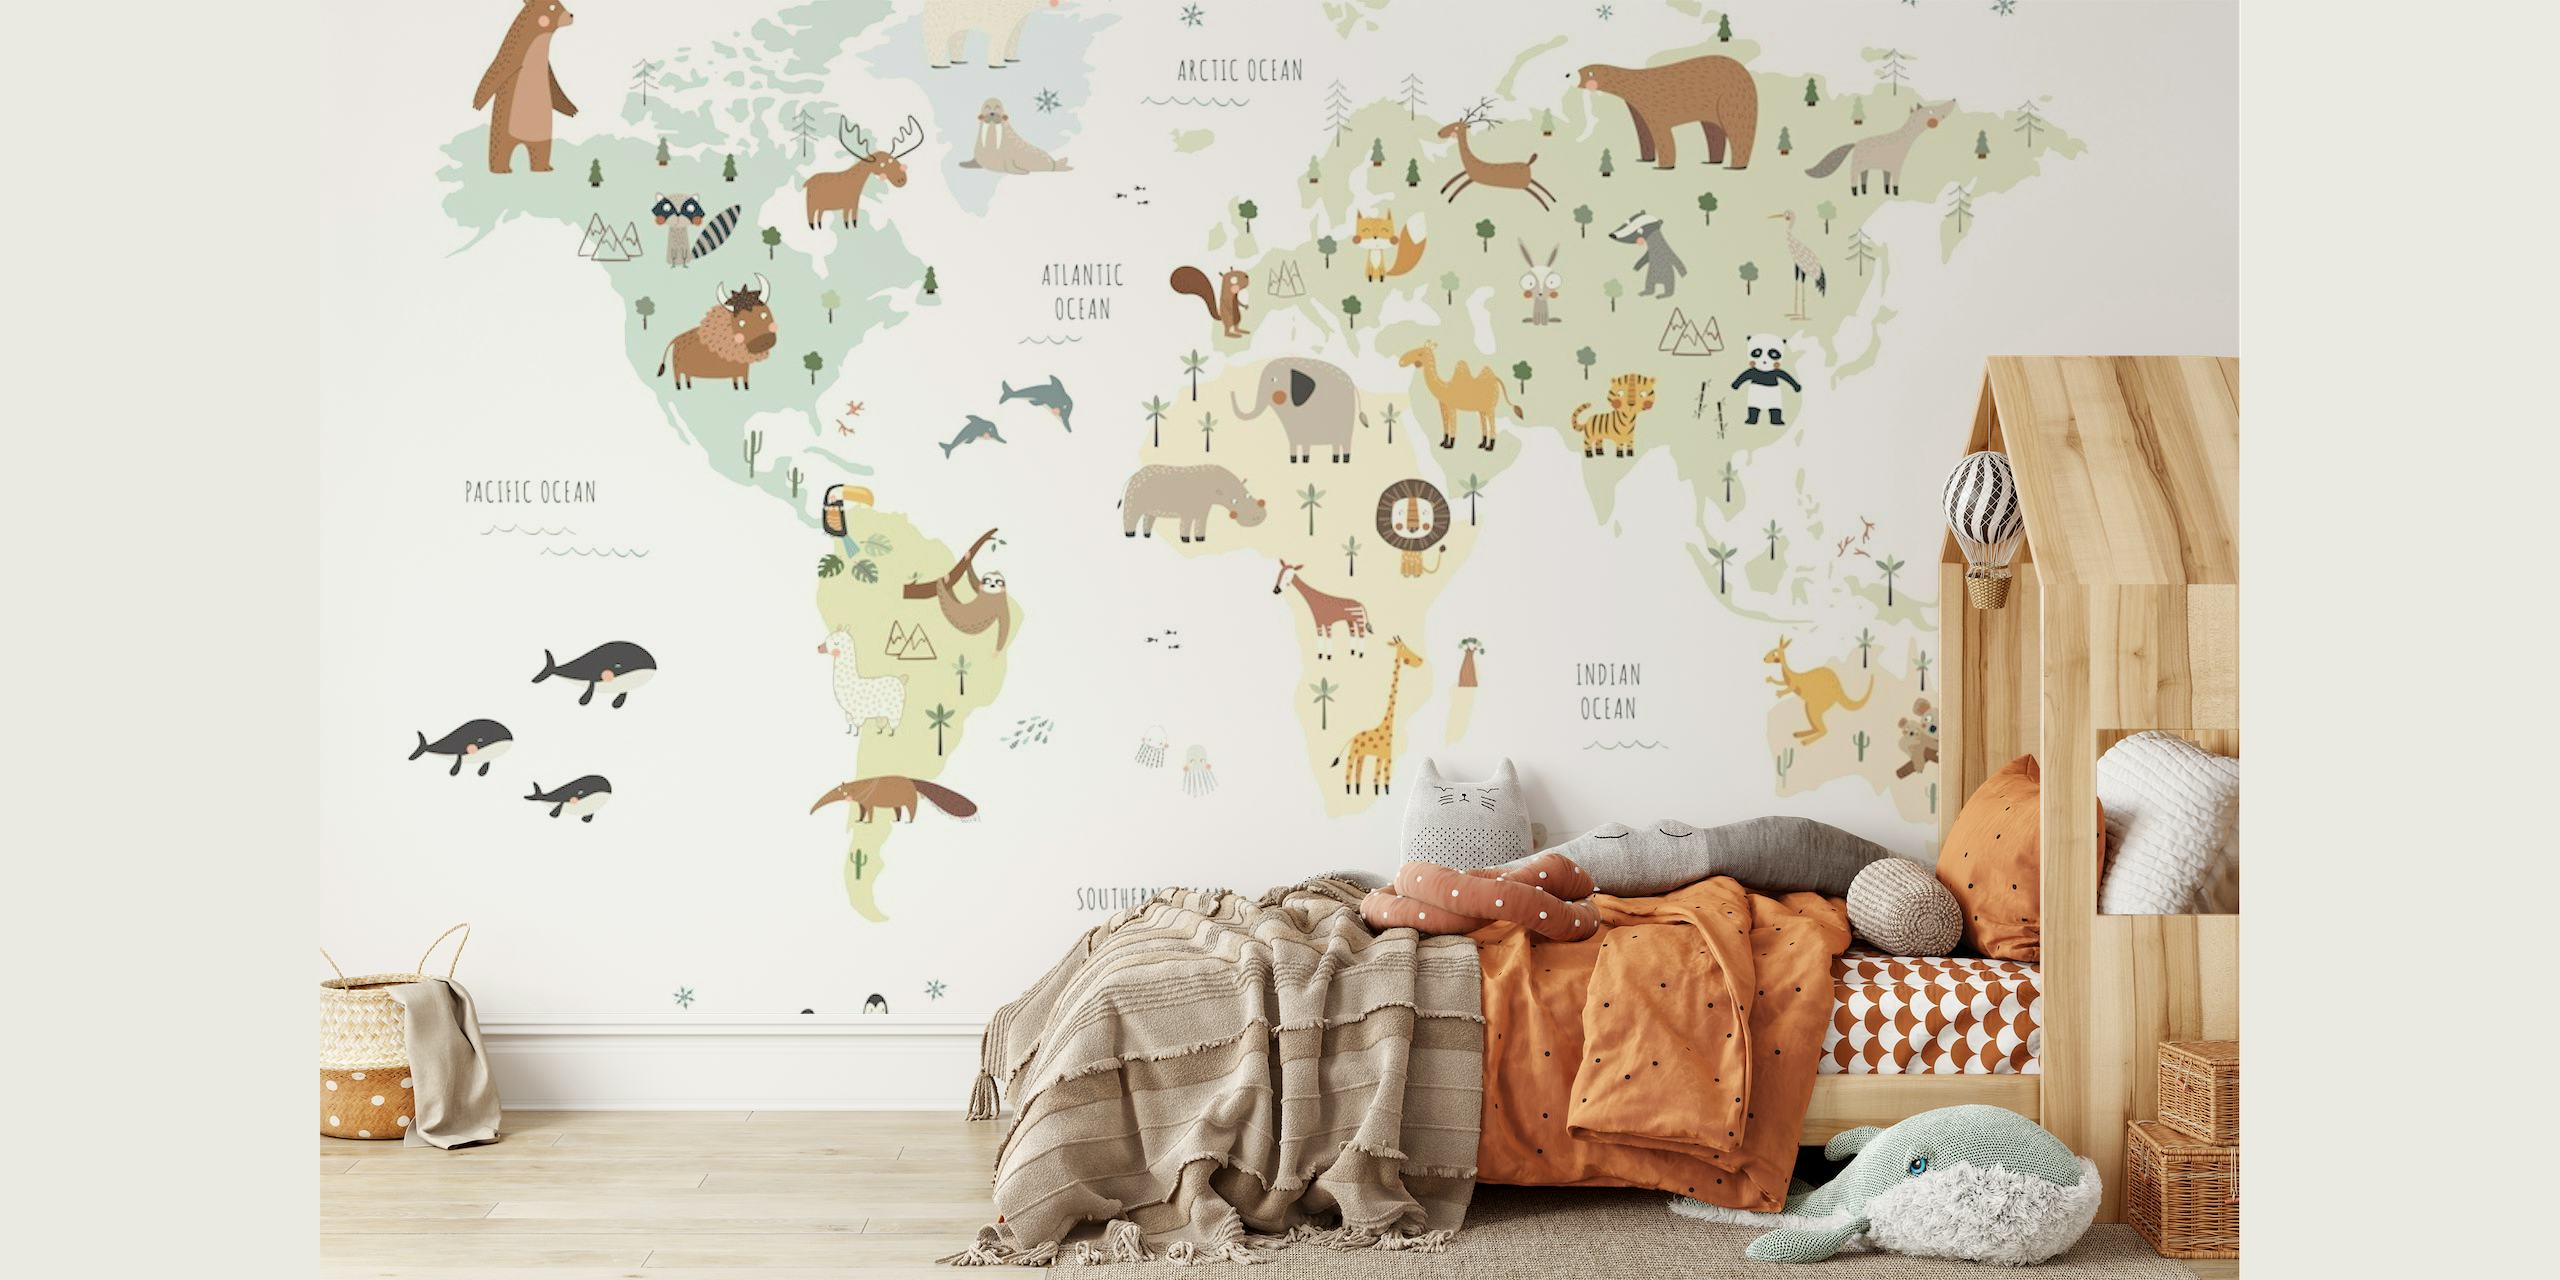 Mural de pared ilustrado con un mapa mundial y animales coloridos que representan diferentes regiones